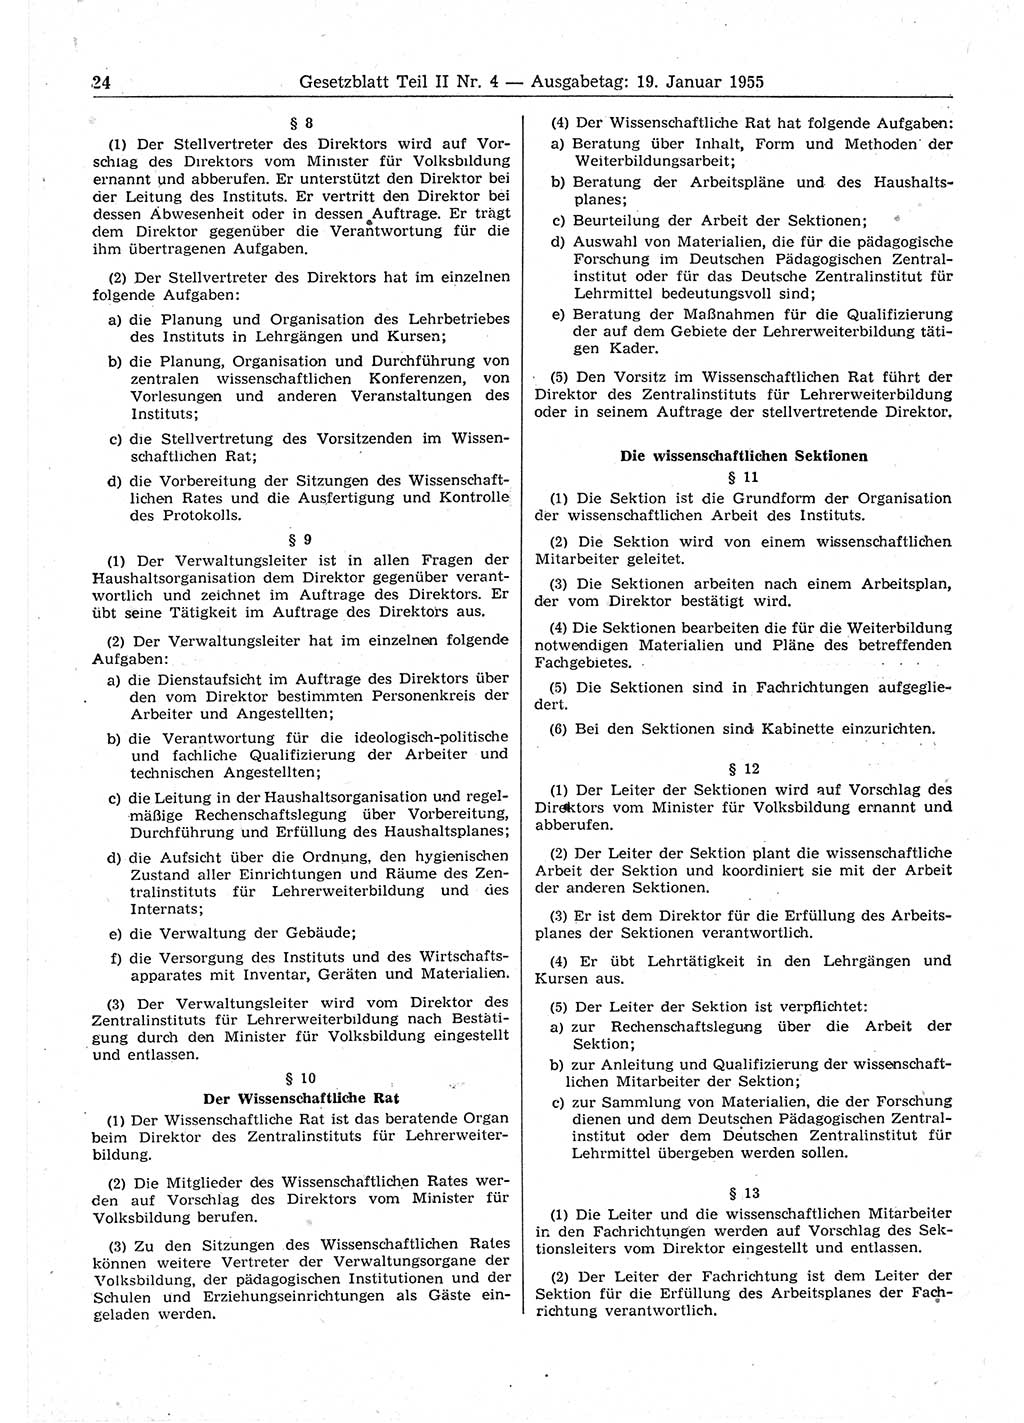 Gesetzblatt (GBl.) der Deutschen Demokratischen Republik (DDR) Teil ⅠⅠ 1955, Seite 24 (GBl. DDR ⅠⅠ 1955, S. 24)